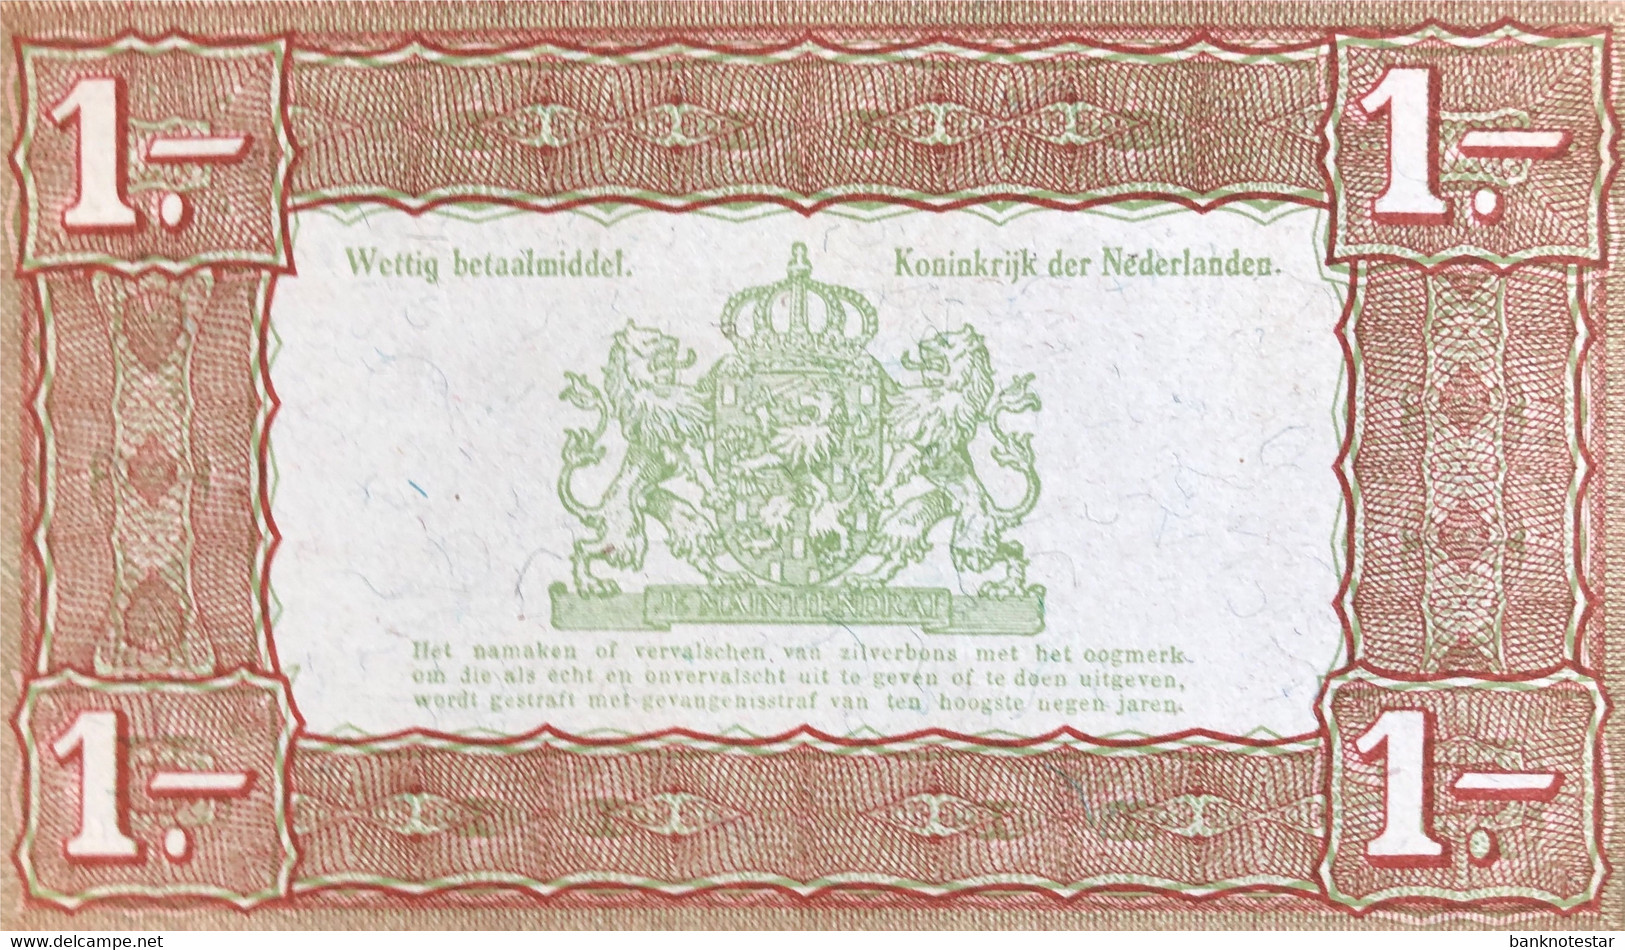 Netherlands 1 Gulden, P-61 (1.10.1938) - UNC - 1 Gulden